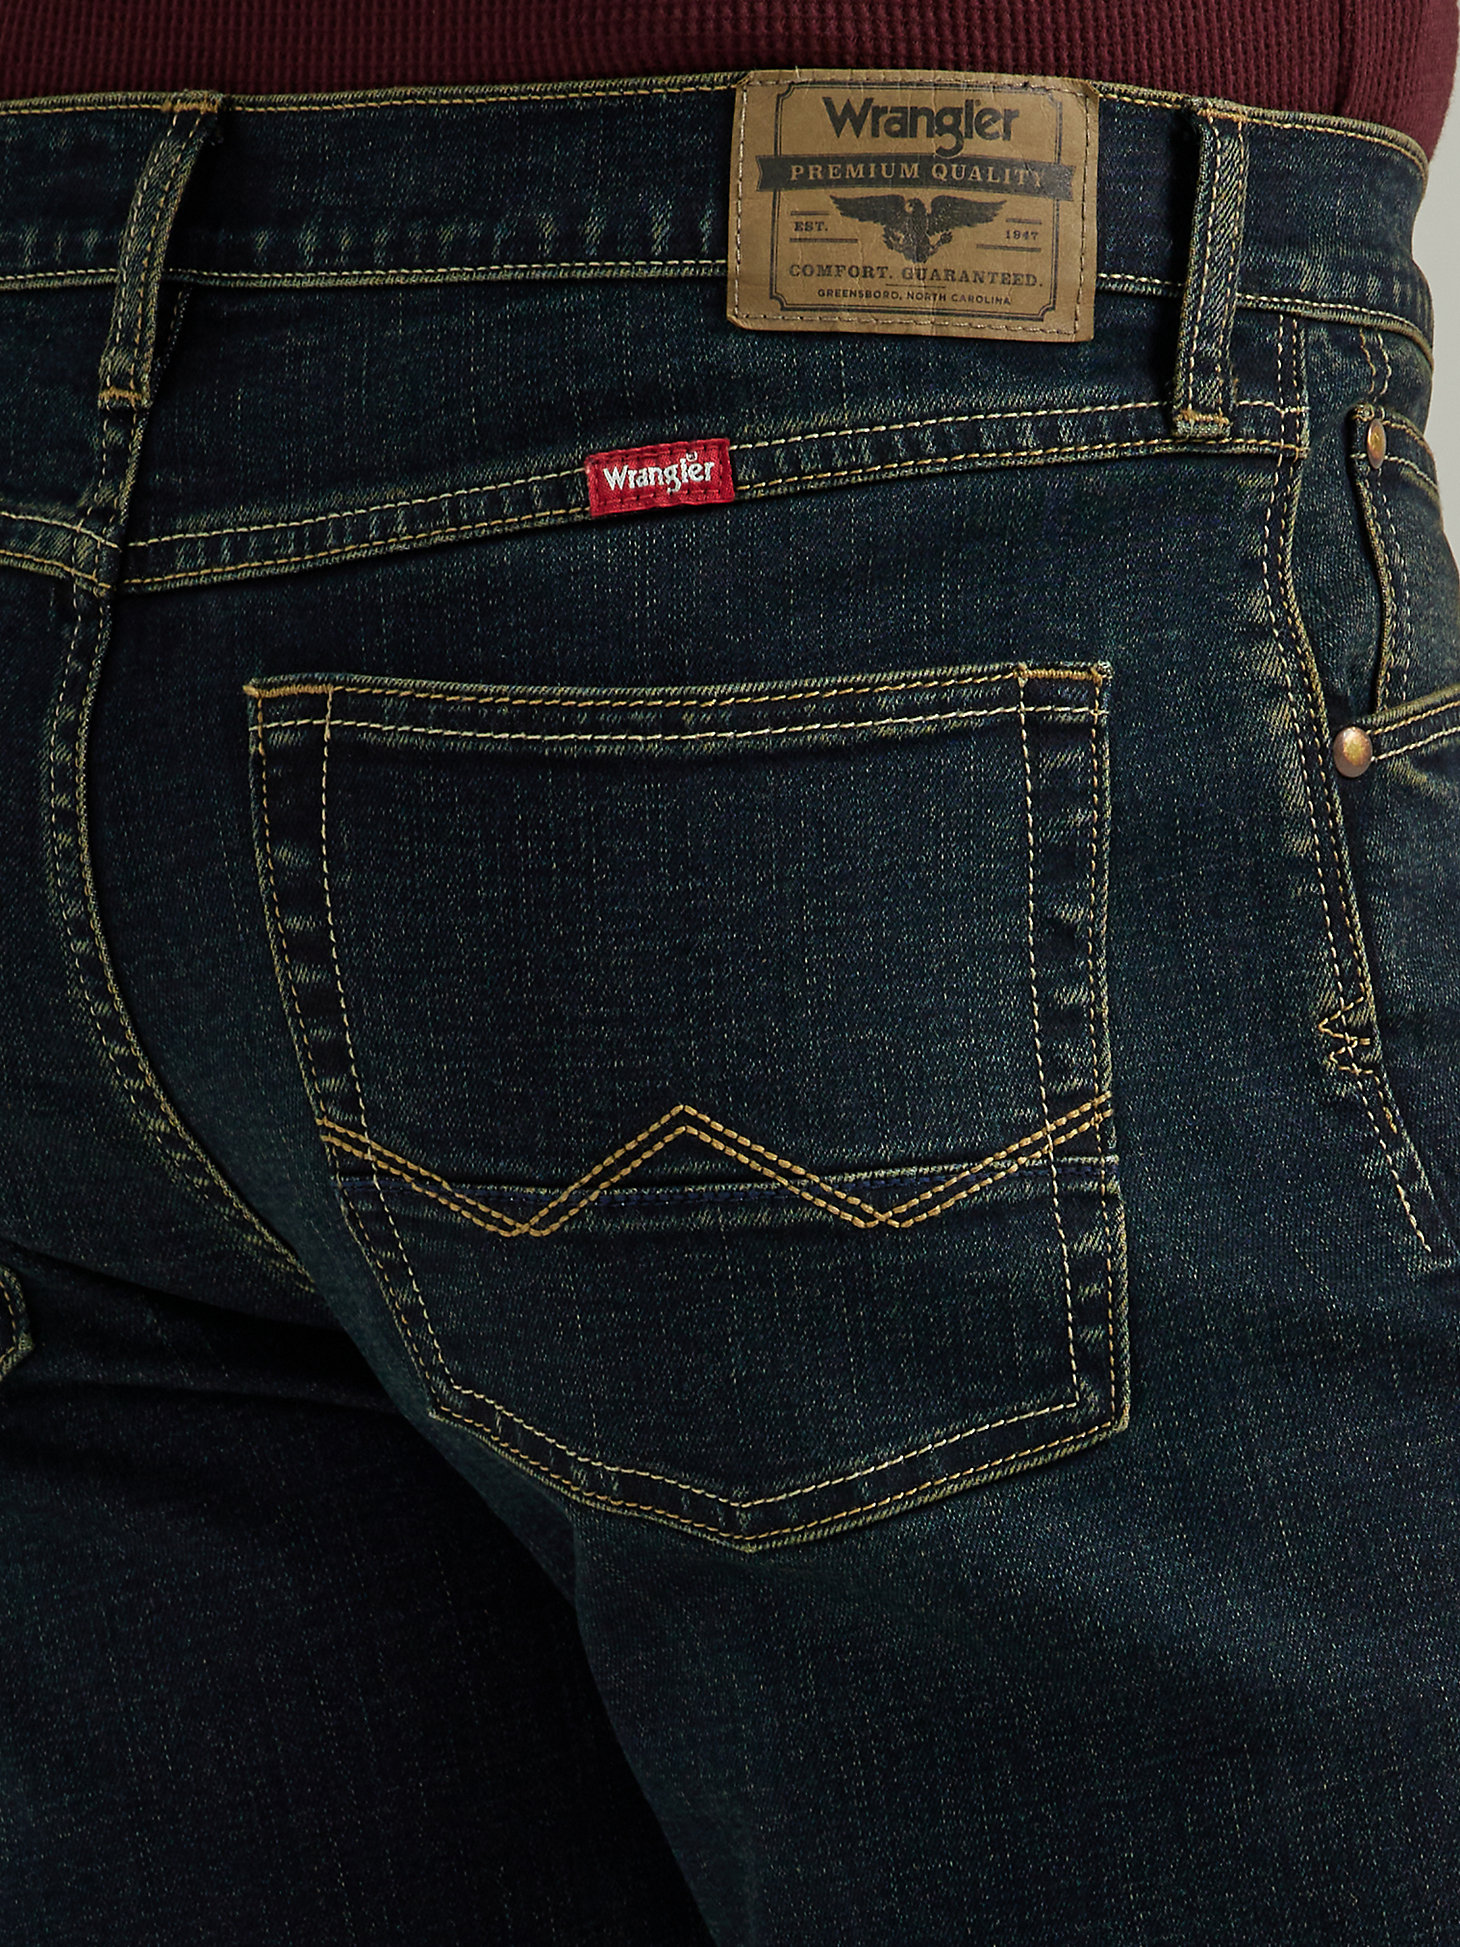 Men's Five Star Premium Slim Straight Jean in Slater alternative view 2